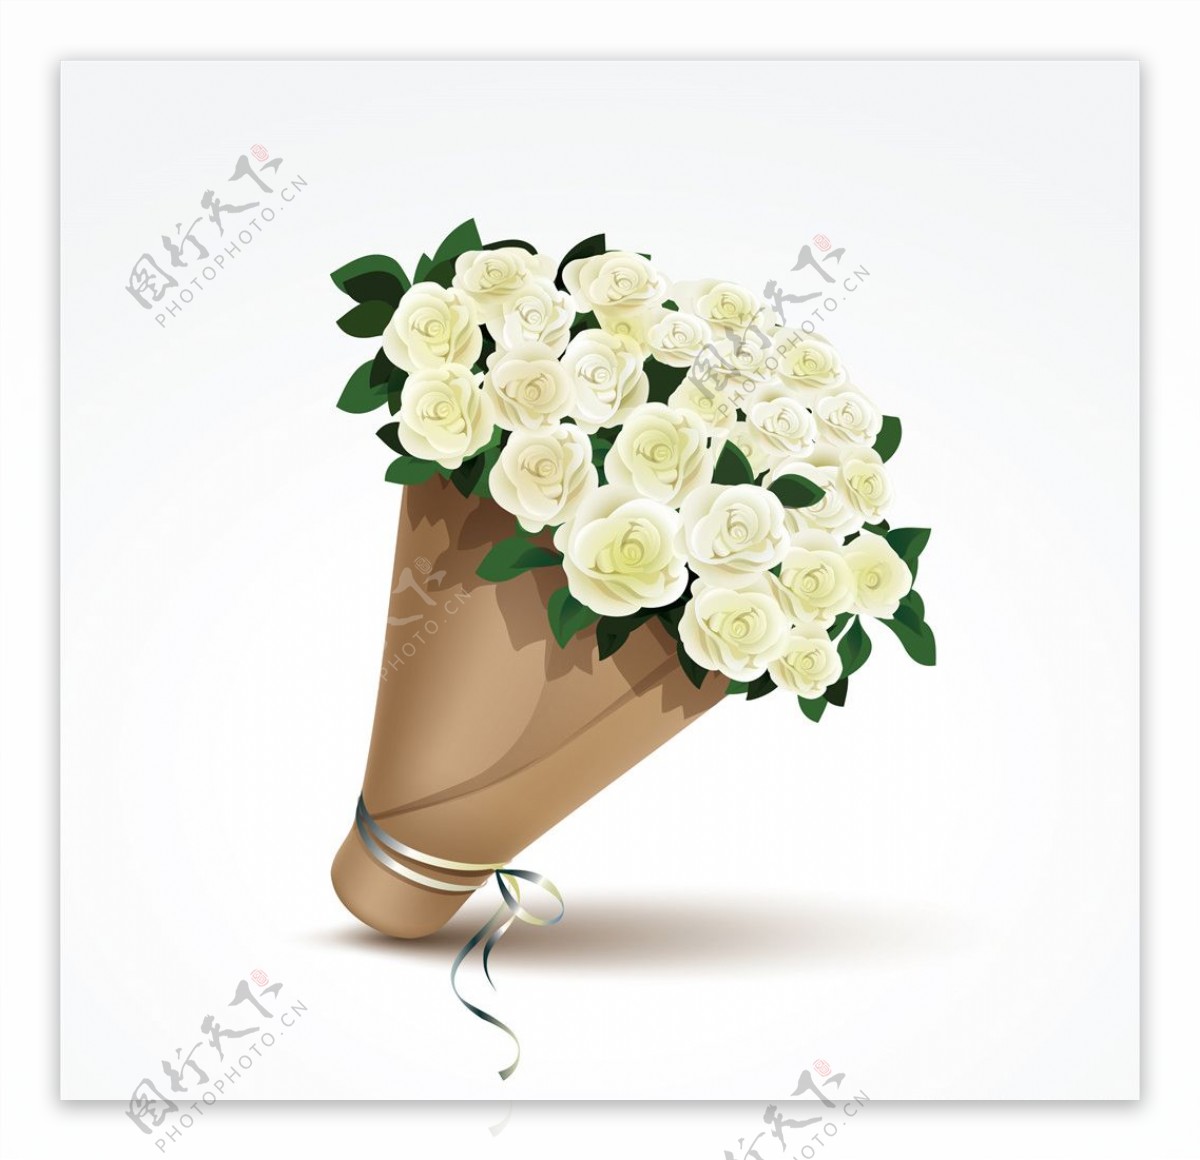 白玫瑰花束矢量素材